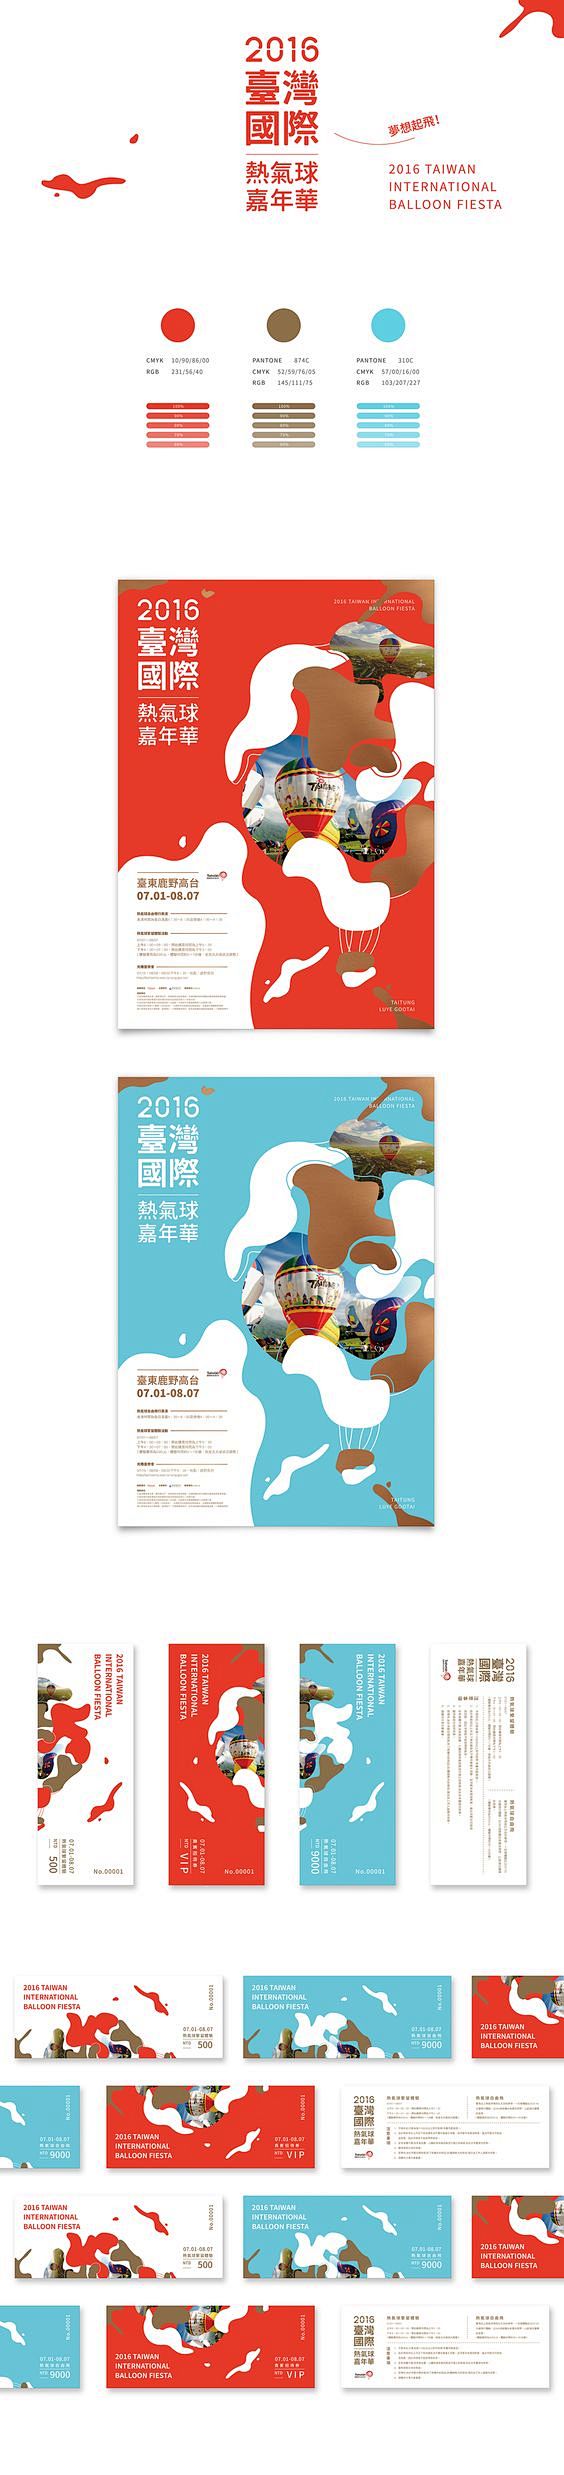 《2016臺灣國際熱氣球嘉年華》TAIW...